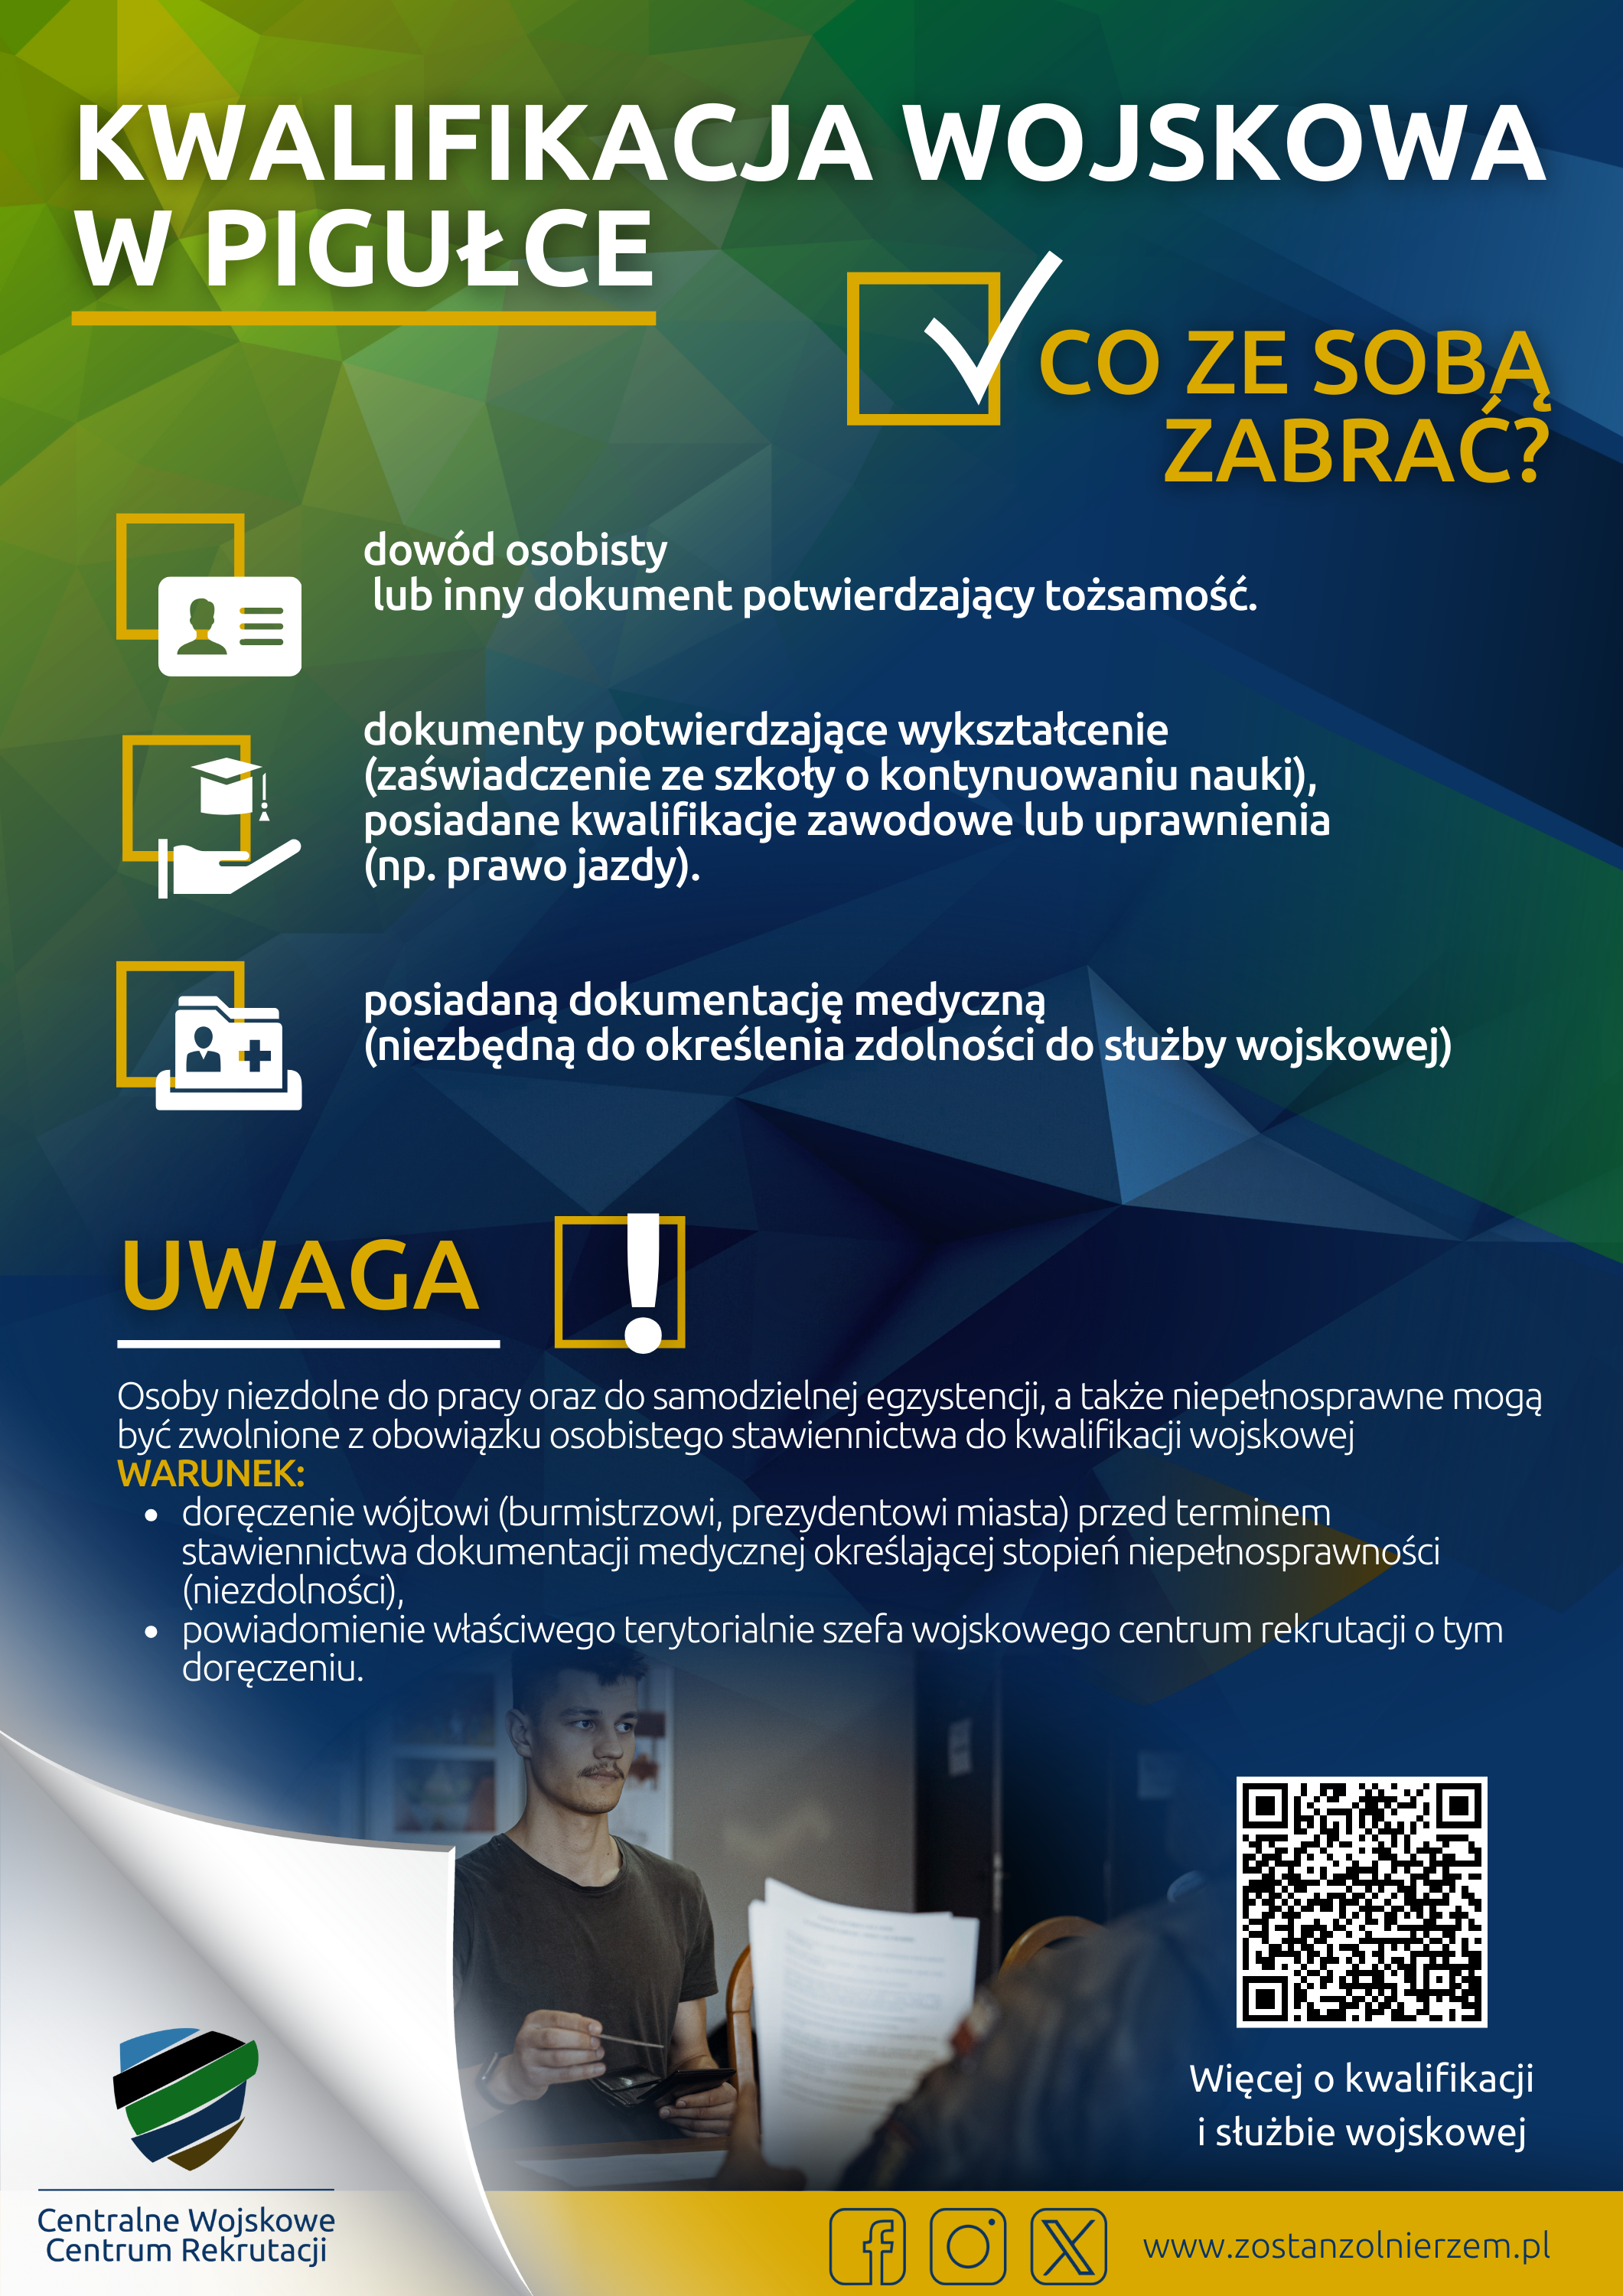 kwalifikacja_co_ze_soba_zabrac.png (4.01 MB)